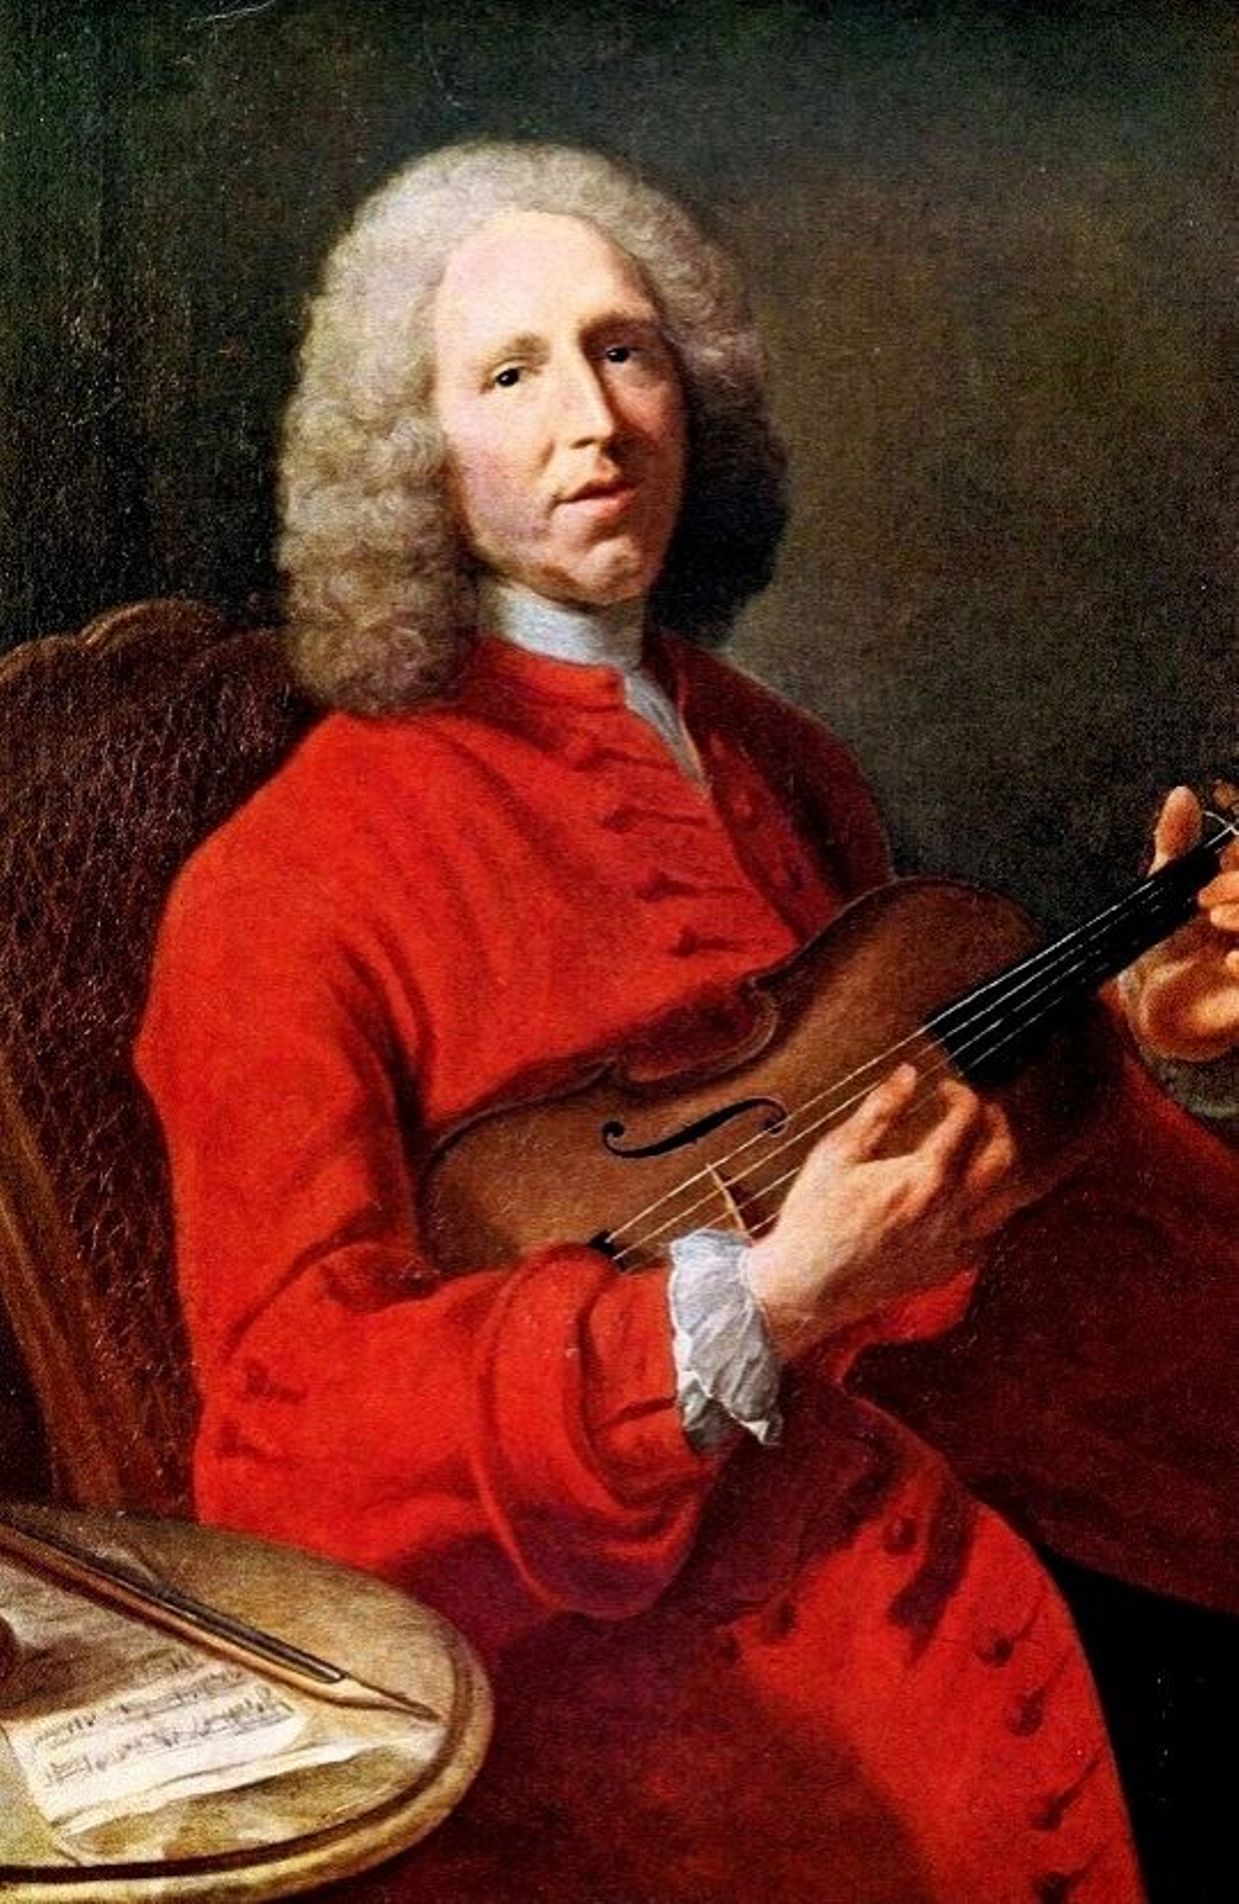 Jean-Philippe Rameau. Portrait attribué à Joseph Aved (1702-1766)
Musée des beaux-arts de Dijon.